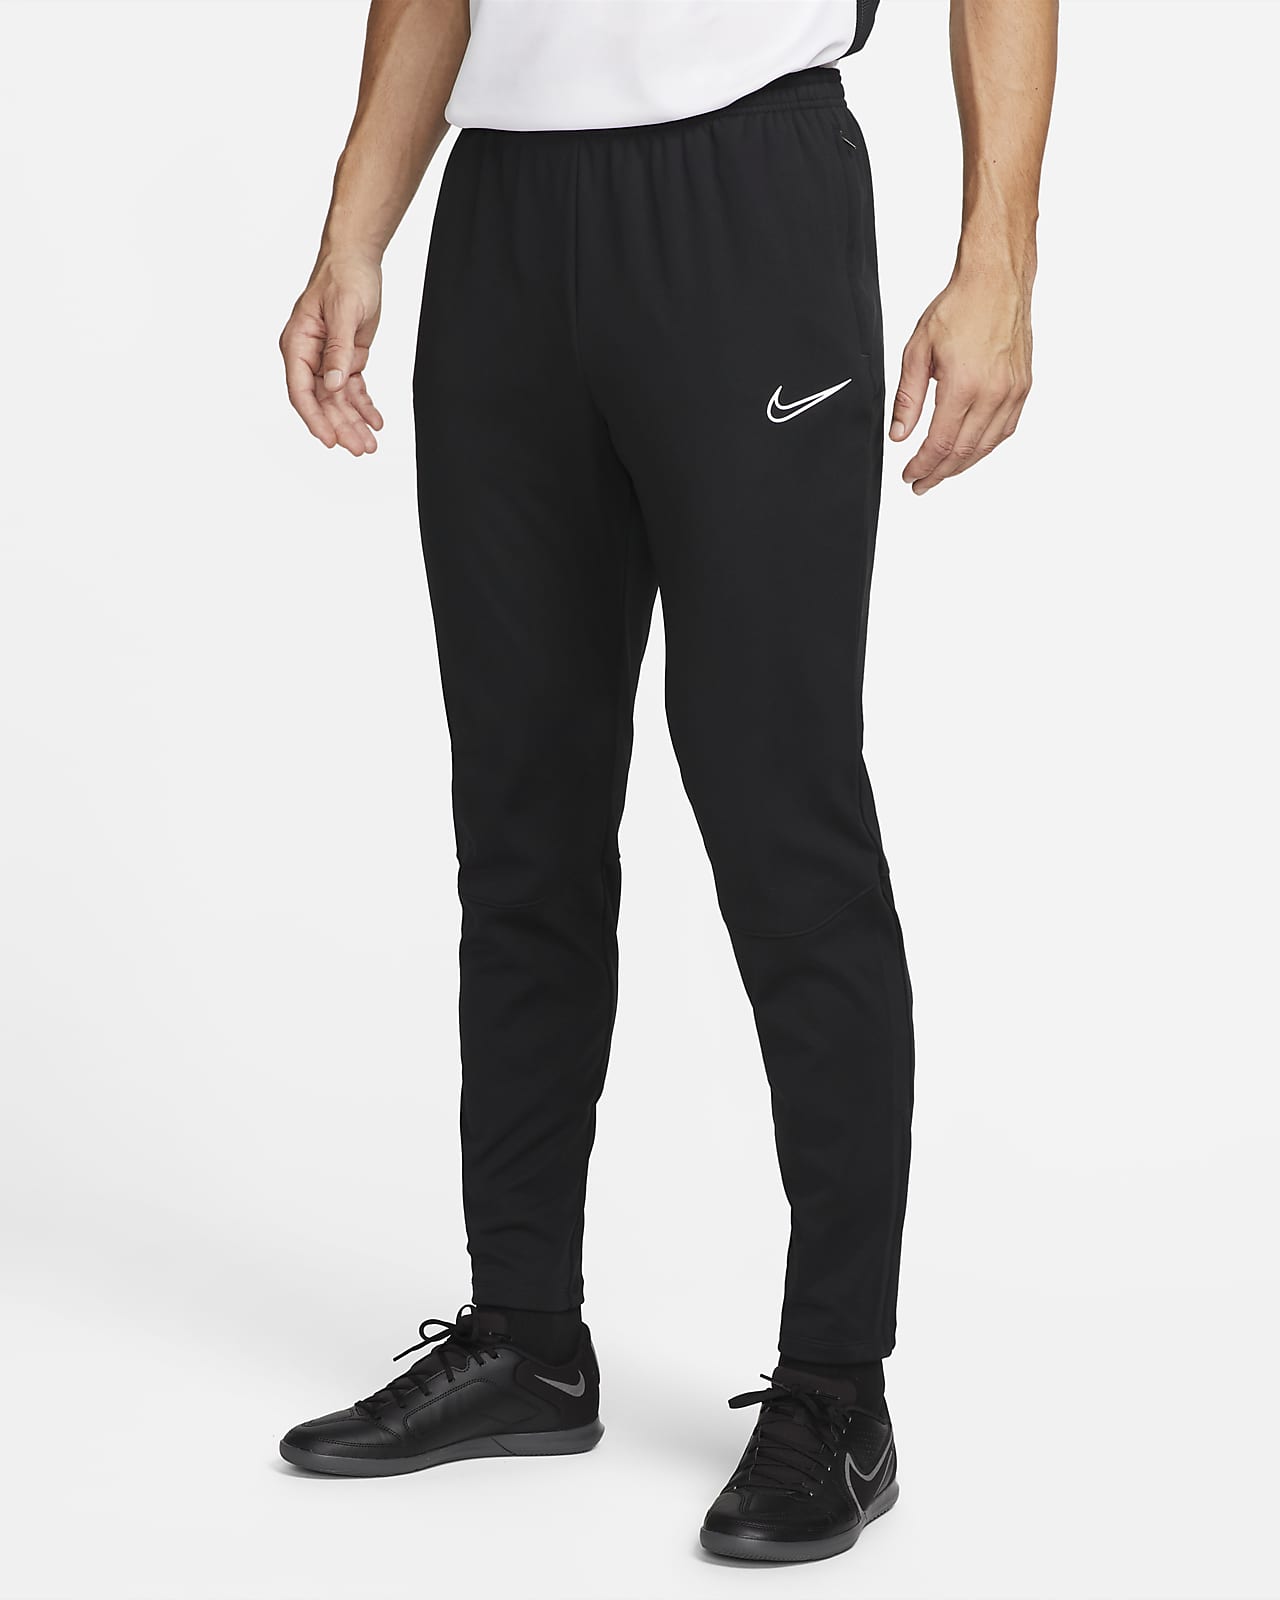 Pantaloni da calcio in maglia Nike Therma Fit Academy Winter Warrior - Uomo